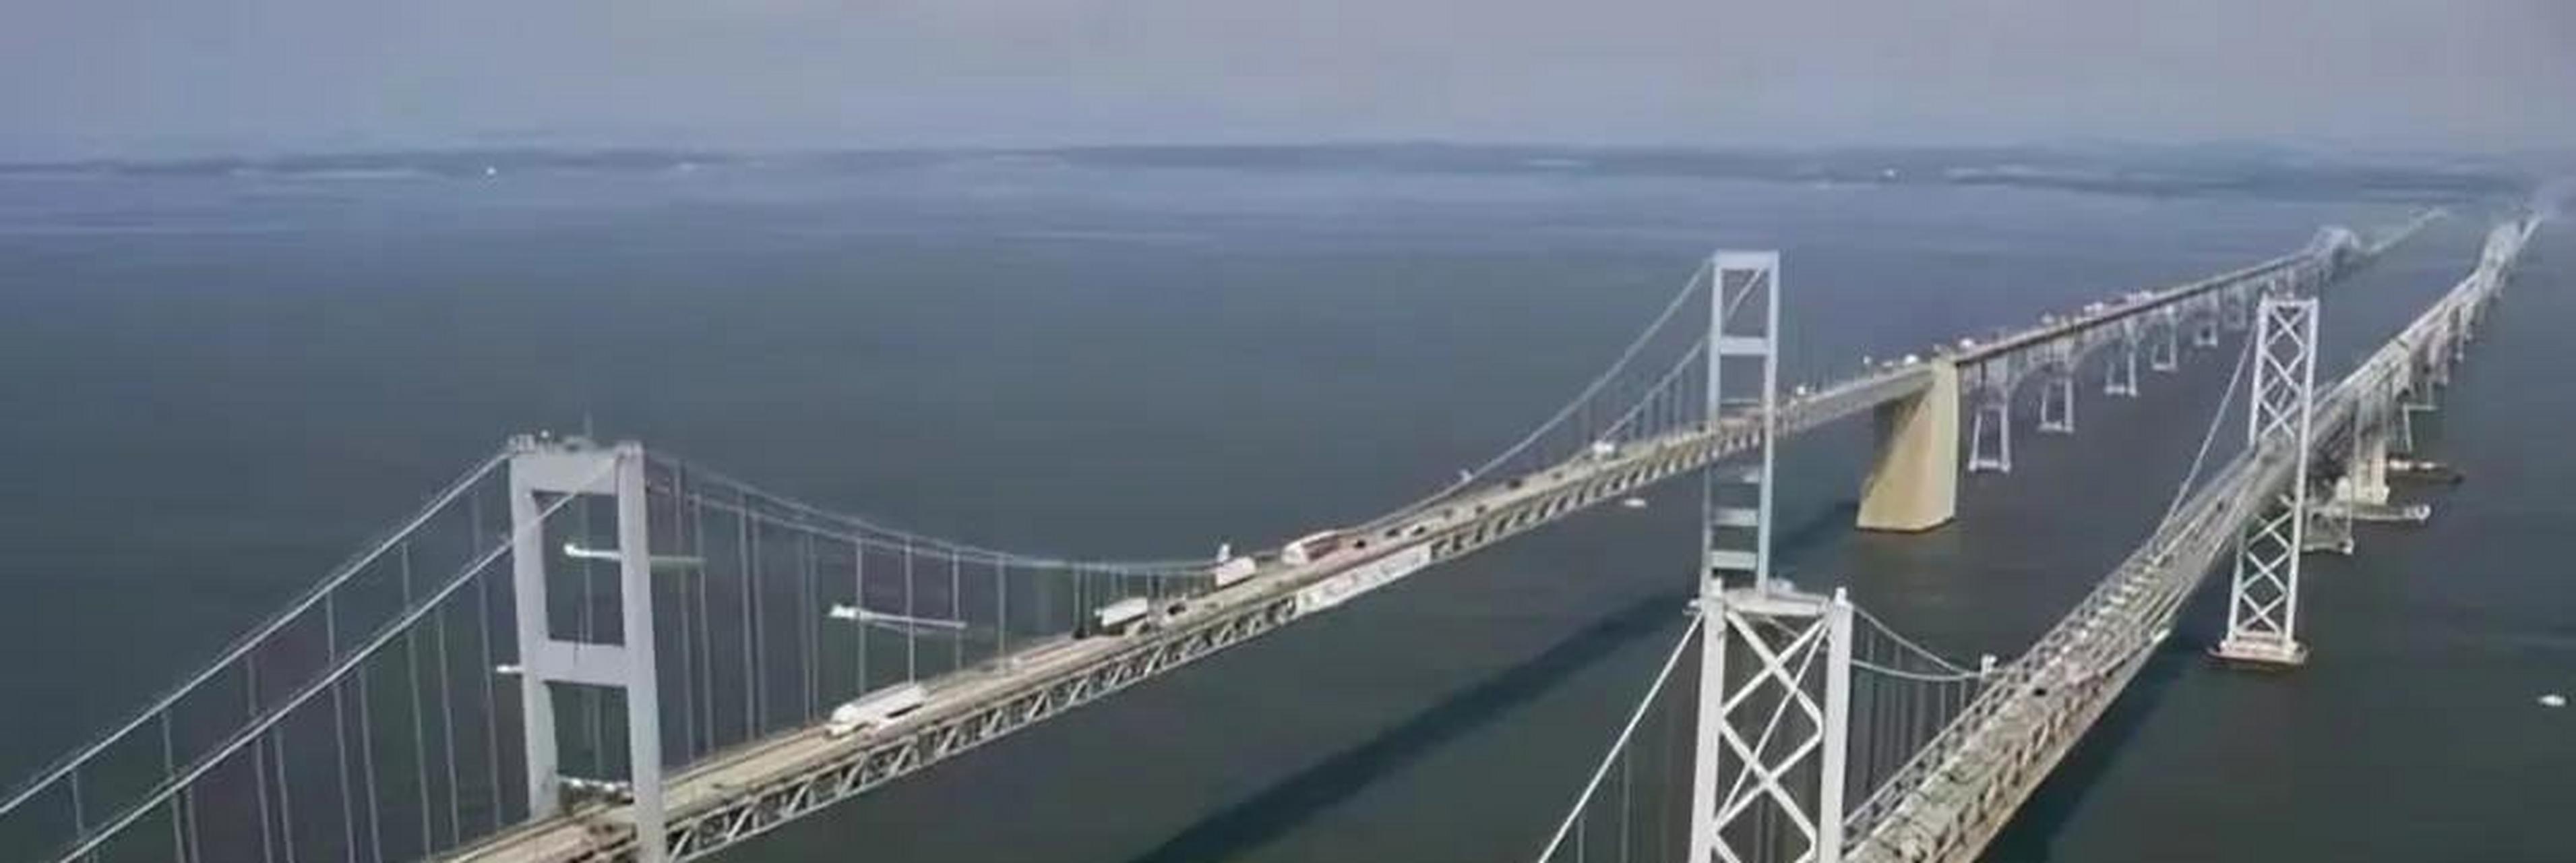 2021年,由中国承包建设的孟加拉国帕德玛大桥首次出现在人们眼前,这一